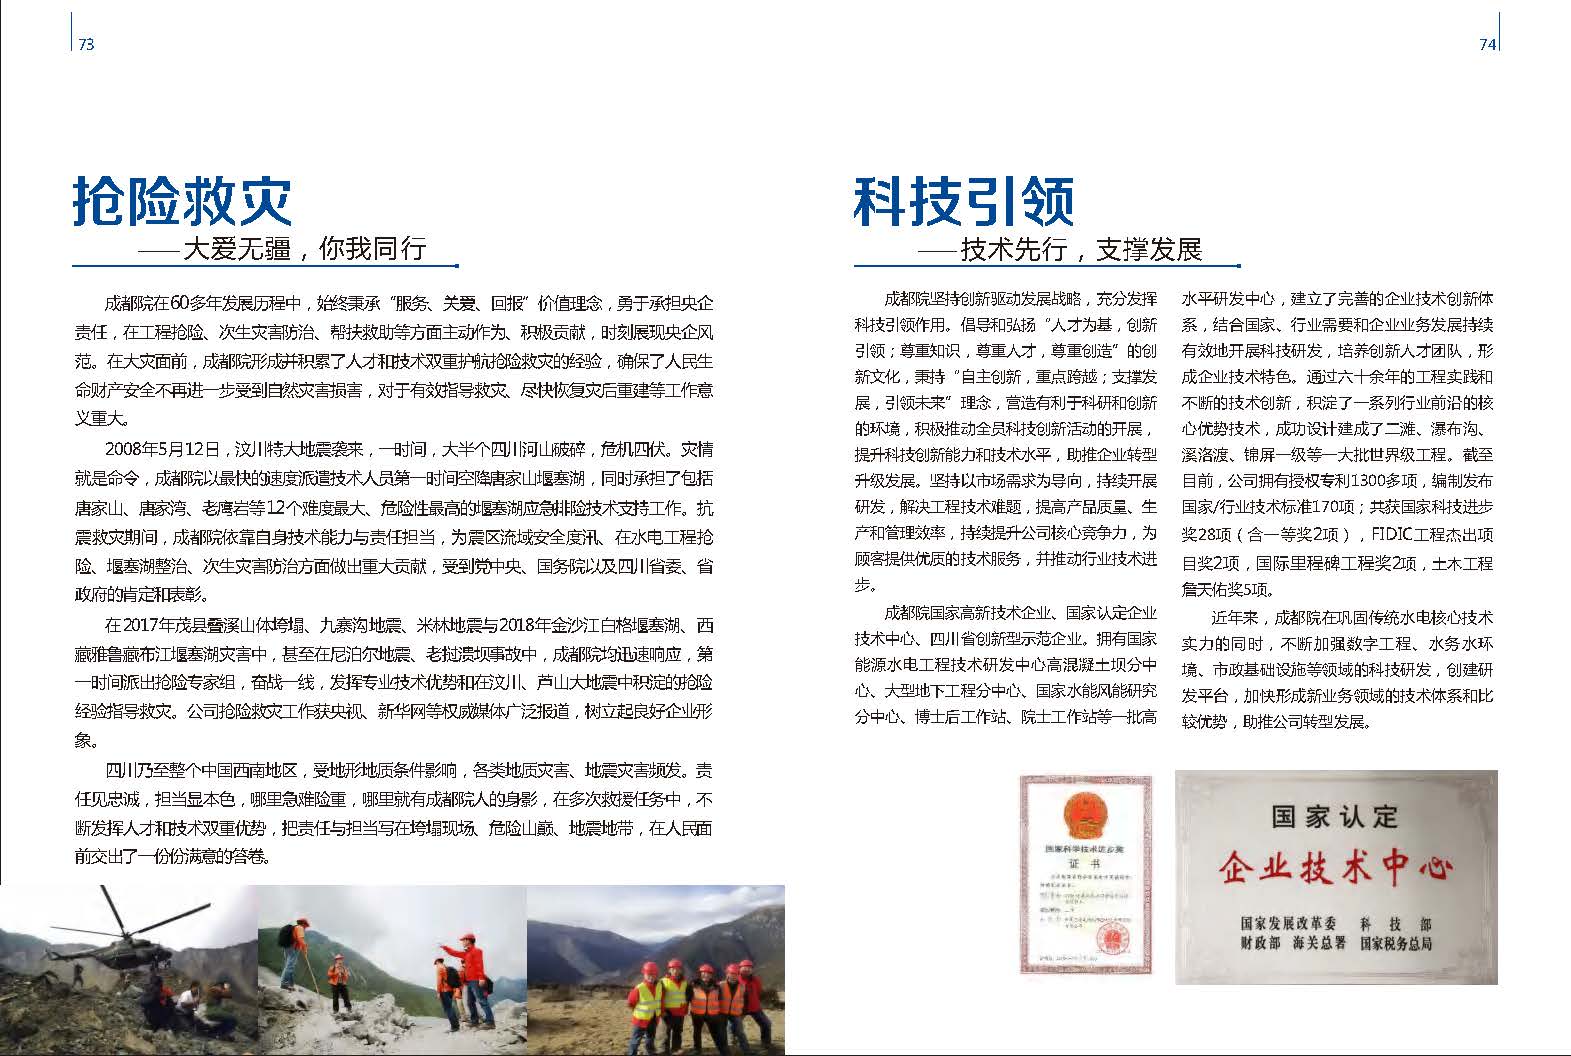 中国电建集团成都勘测设计研究院有限公司《成都院“愿成”文化手册》